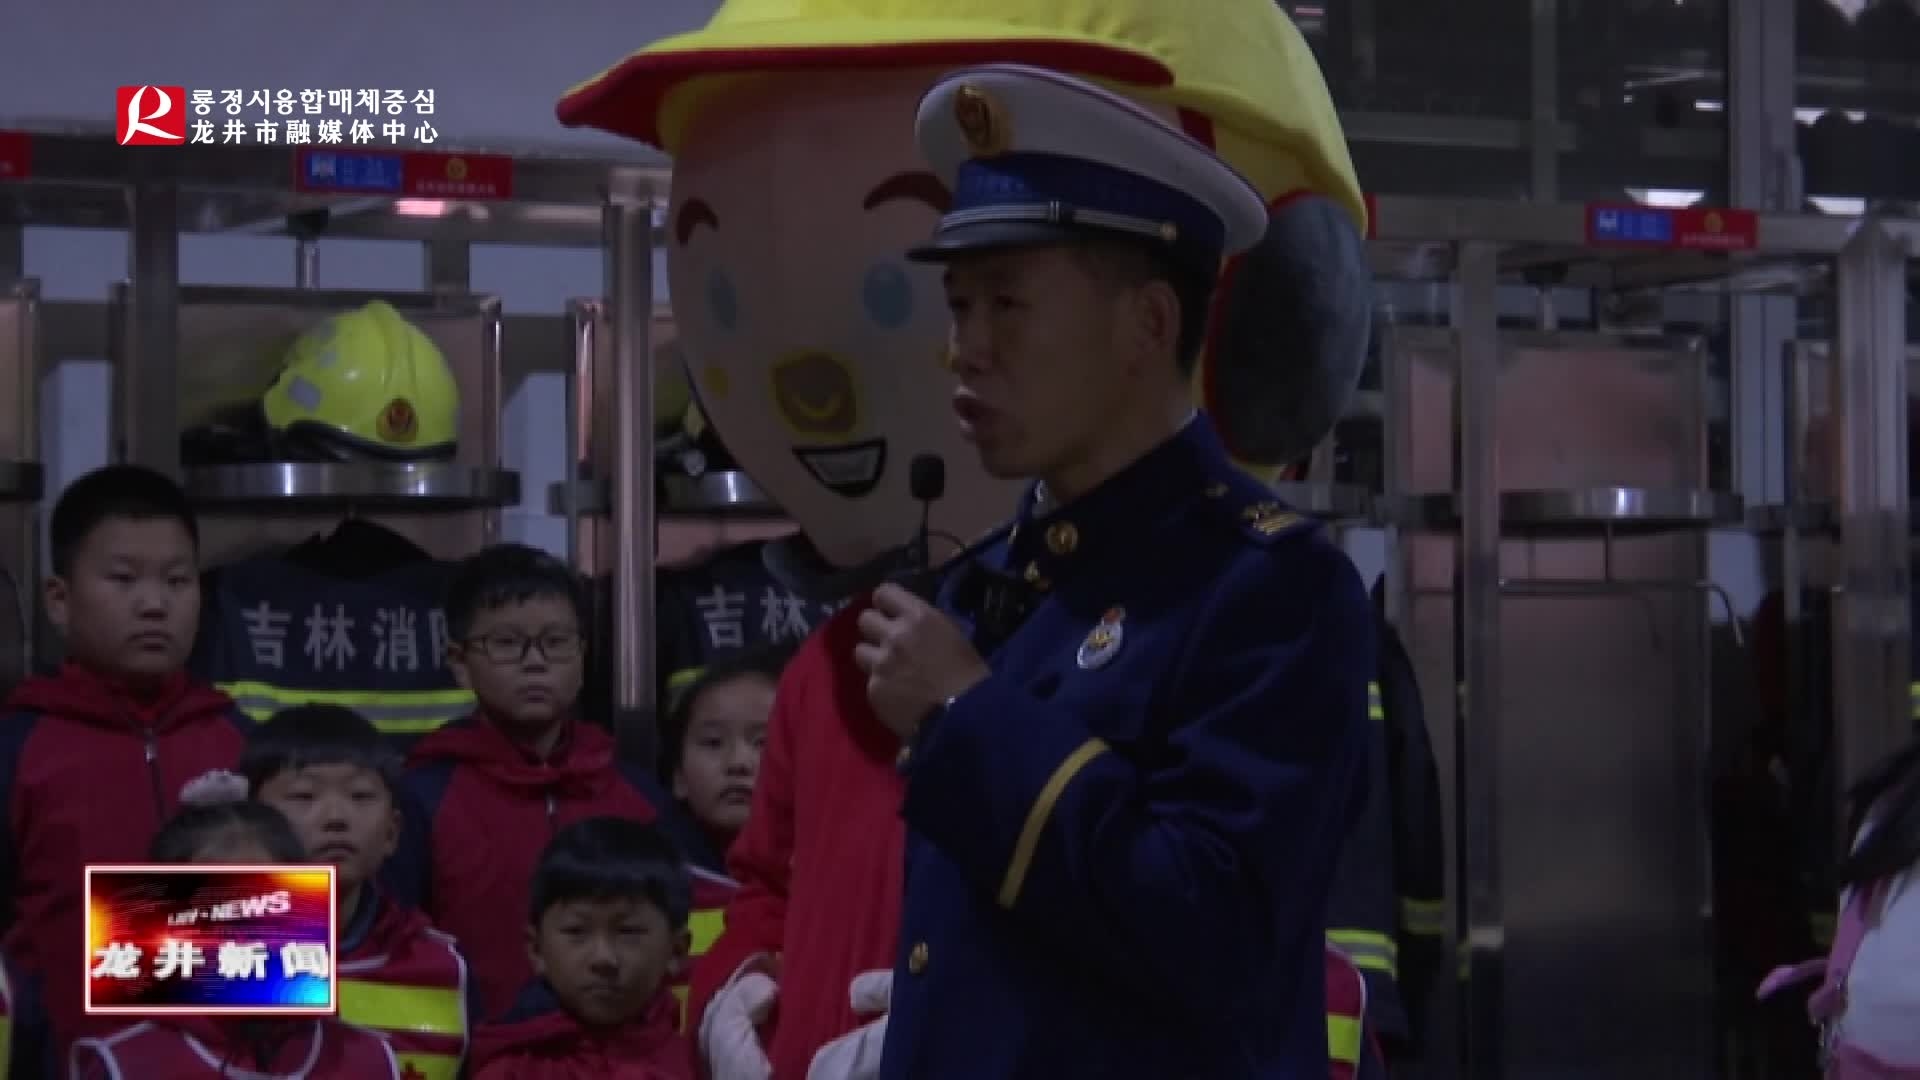 【龙井新闻】市妇联开展 “走进消防队 致敬火焰蓝” 活动